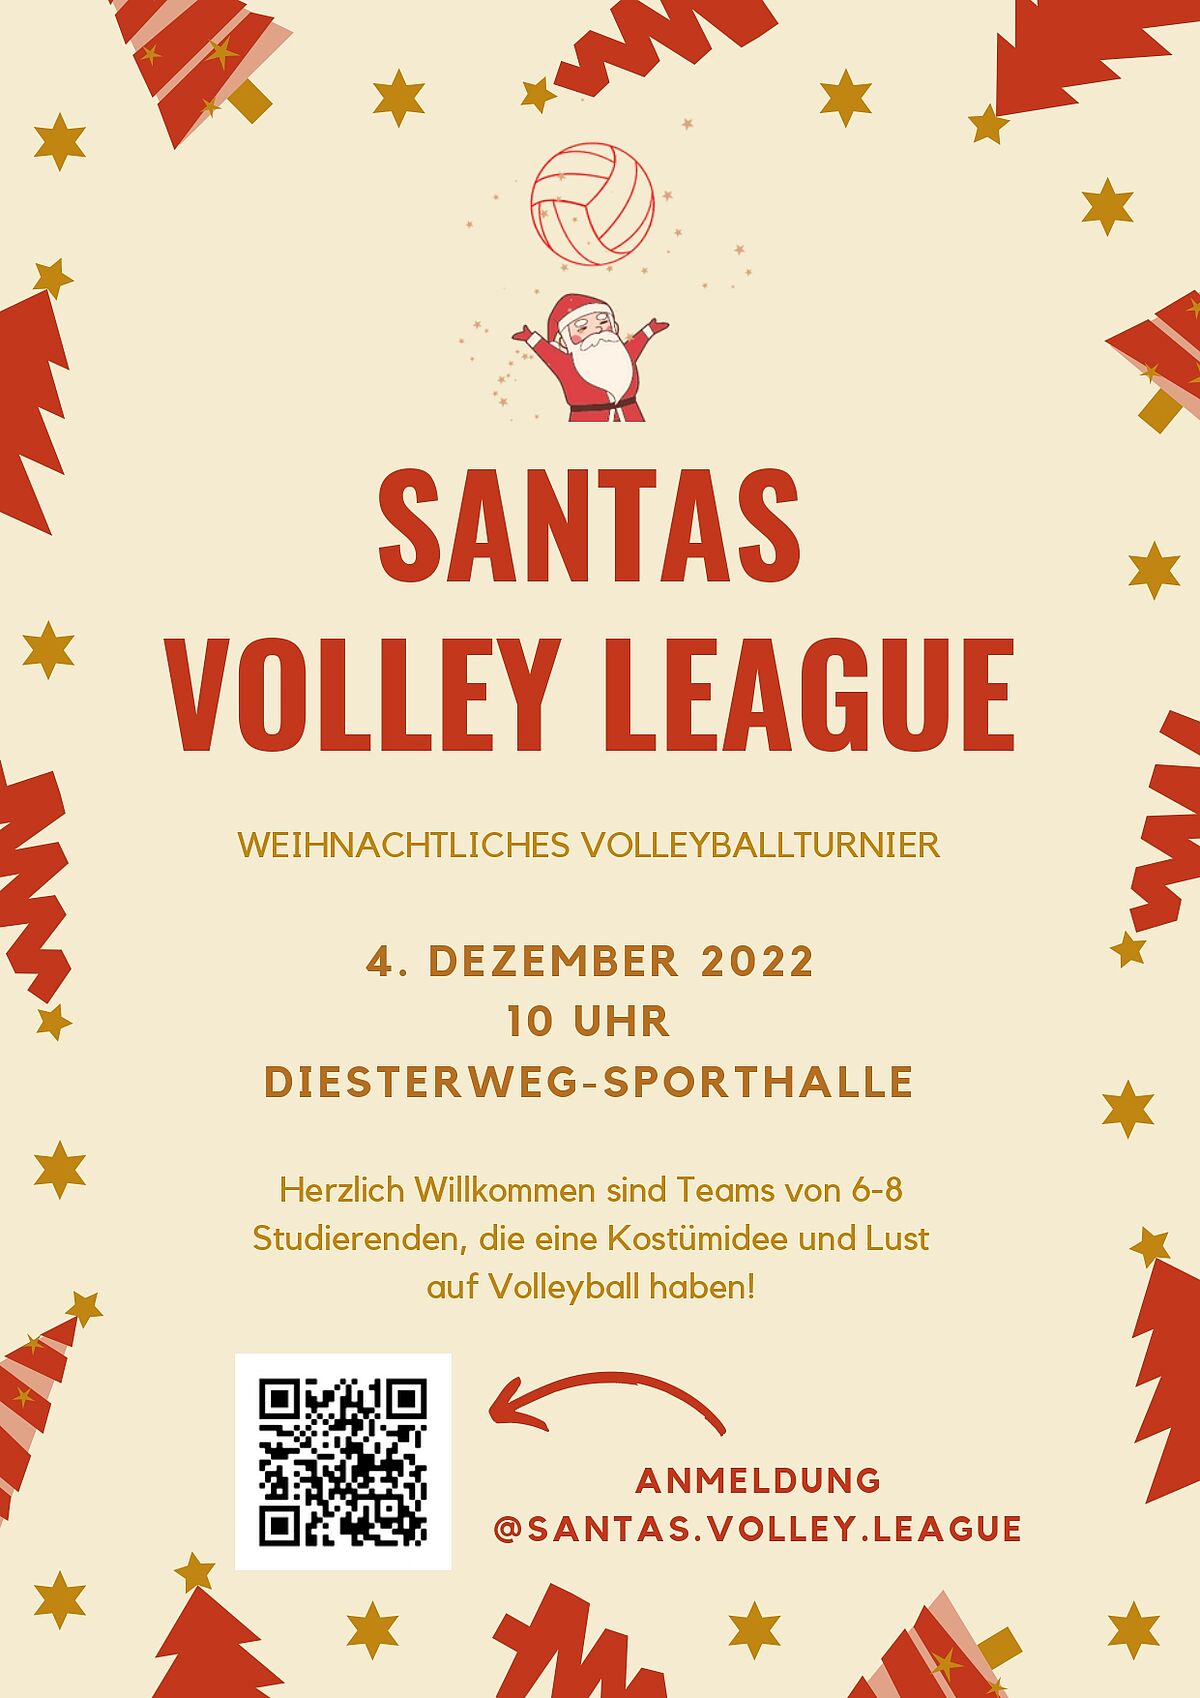 Santas Volley League am 4. Dezember 2022